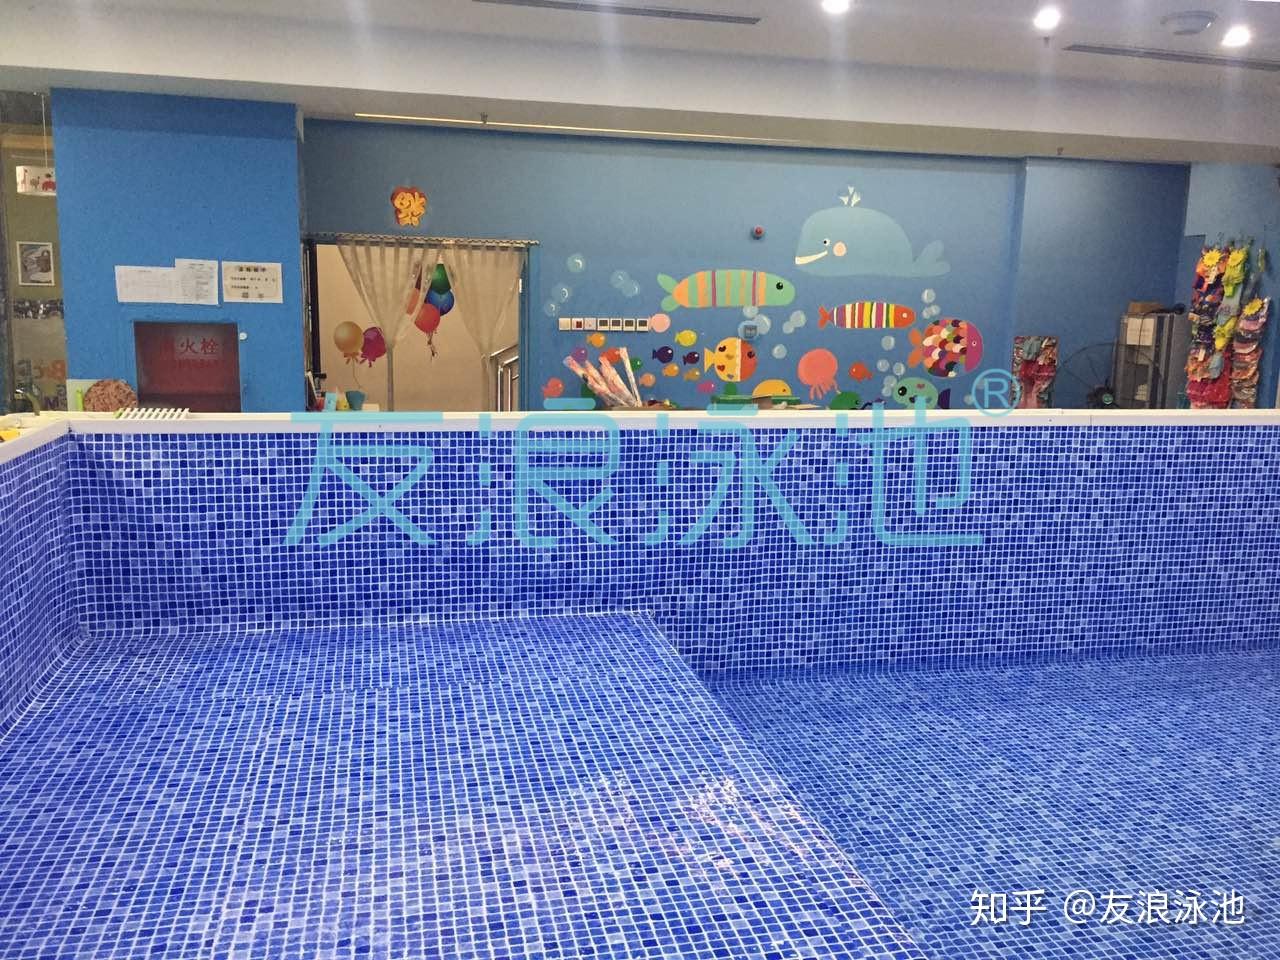 室内整体泳池设计需要注意什么?-行业资讯-深圳市恒丰温泉泳池设备有限公司